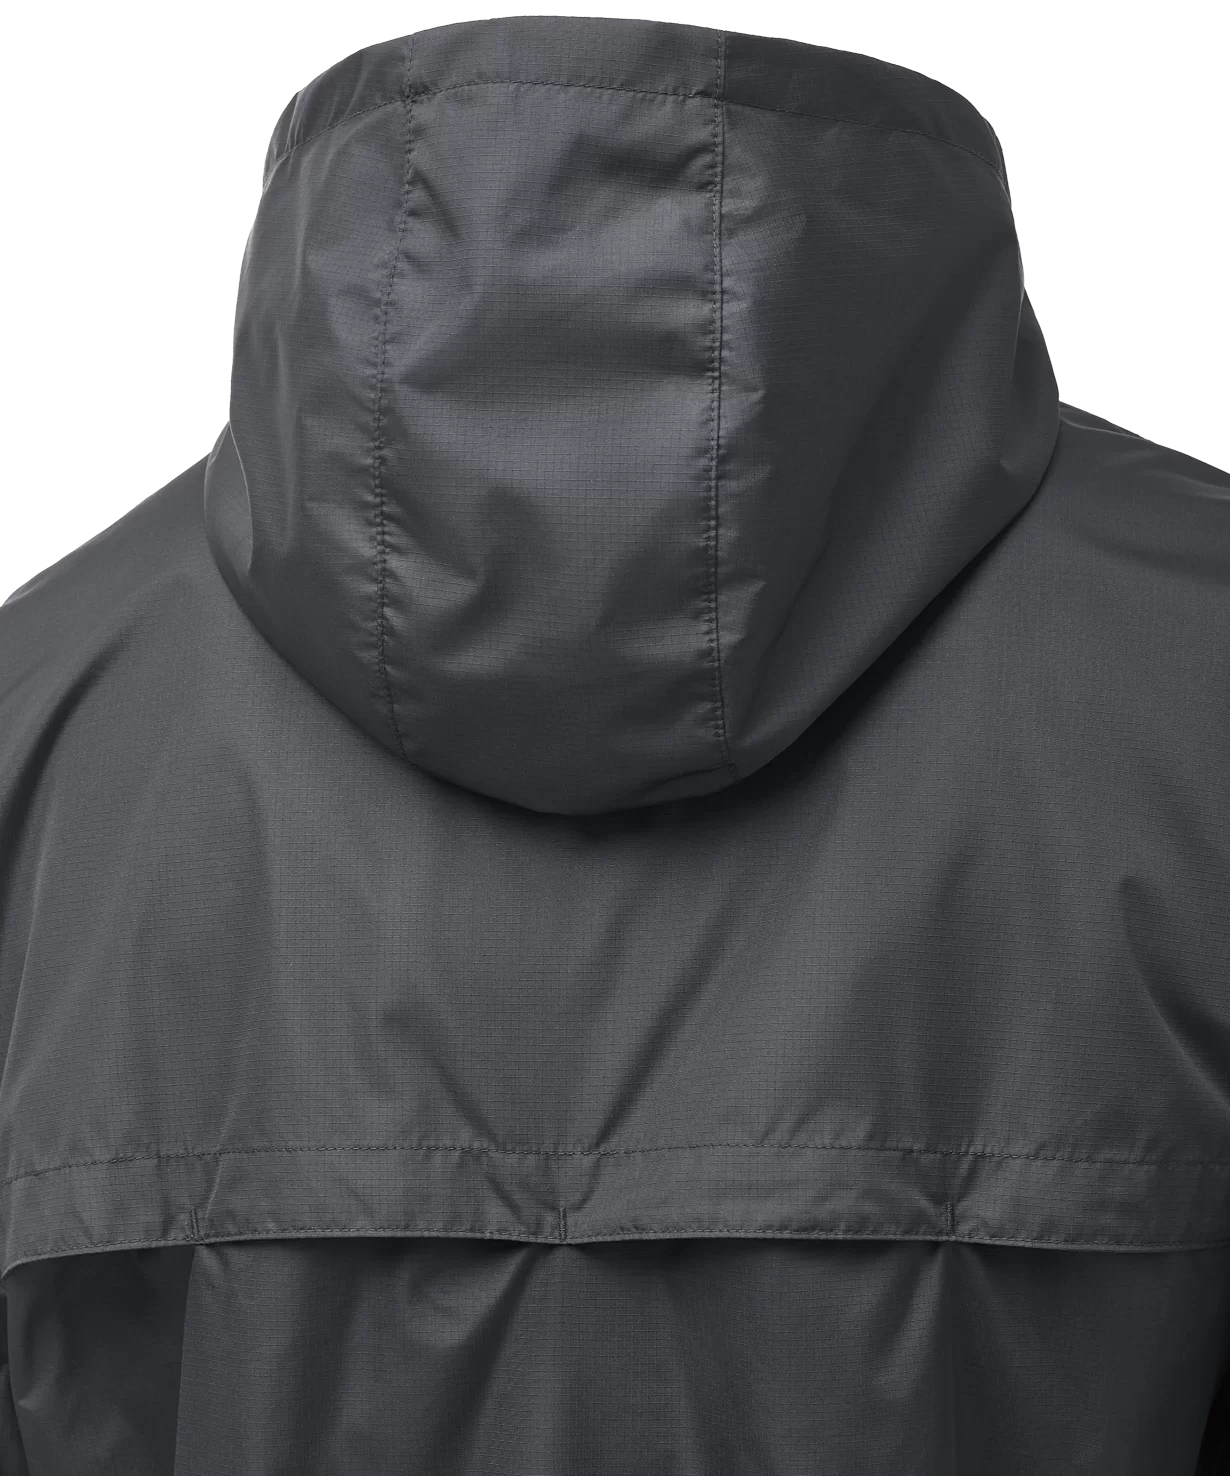 Реальное фото Куртка ветрозащитная DIVISION PerFormPROOF Shower Jacket, черный, детский Jögel от магазина СпортЕВ